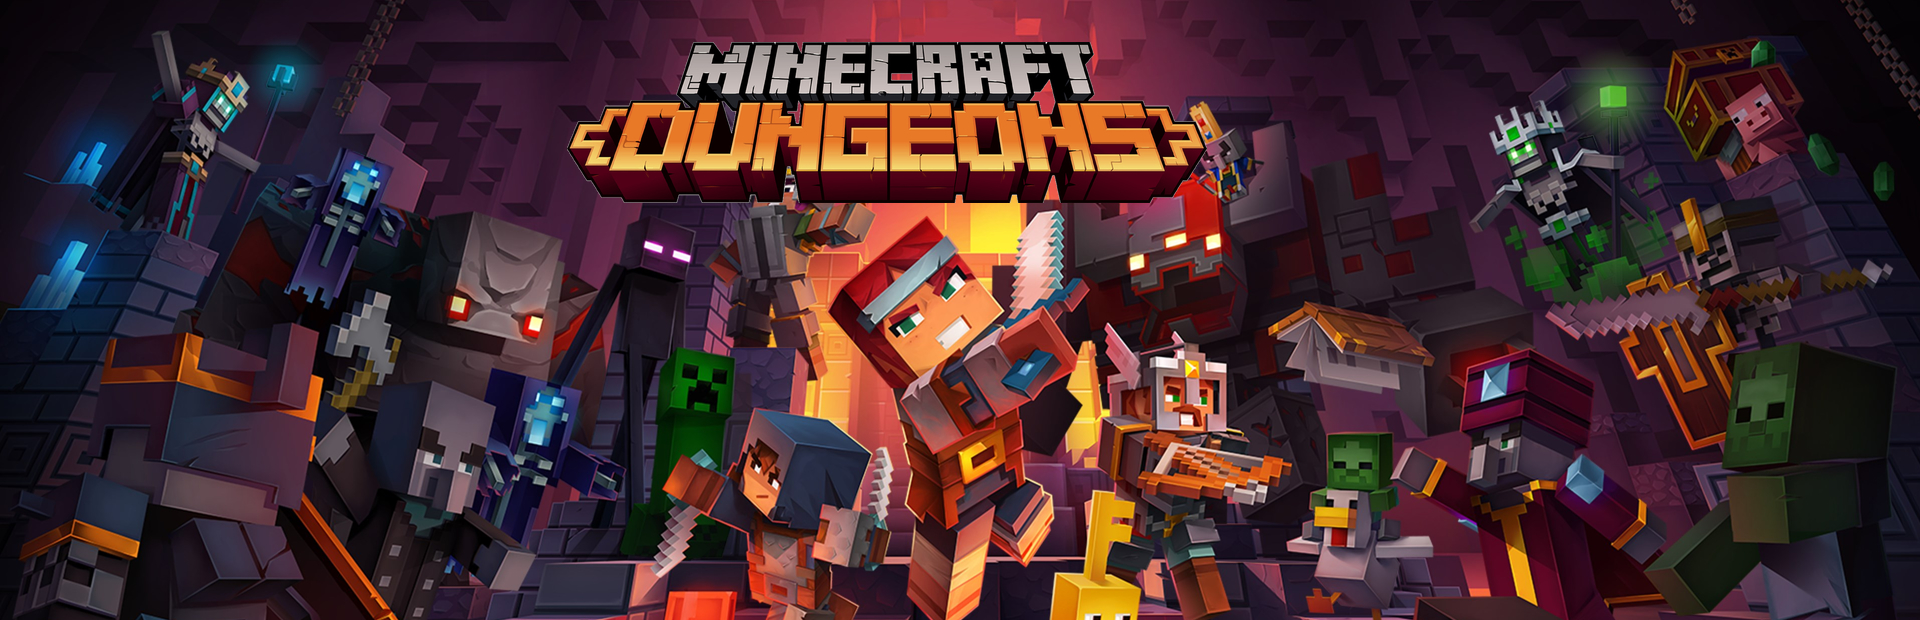 دانلود بازی Minecraft Dungeons برای PC | گیمباتو